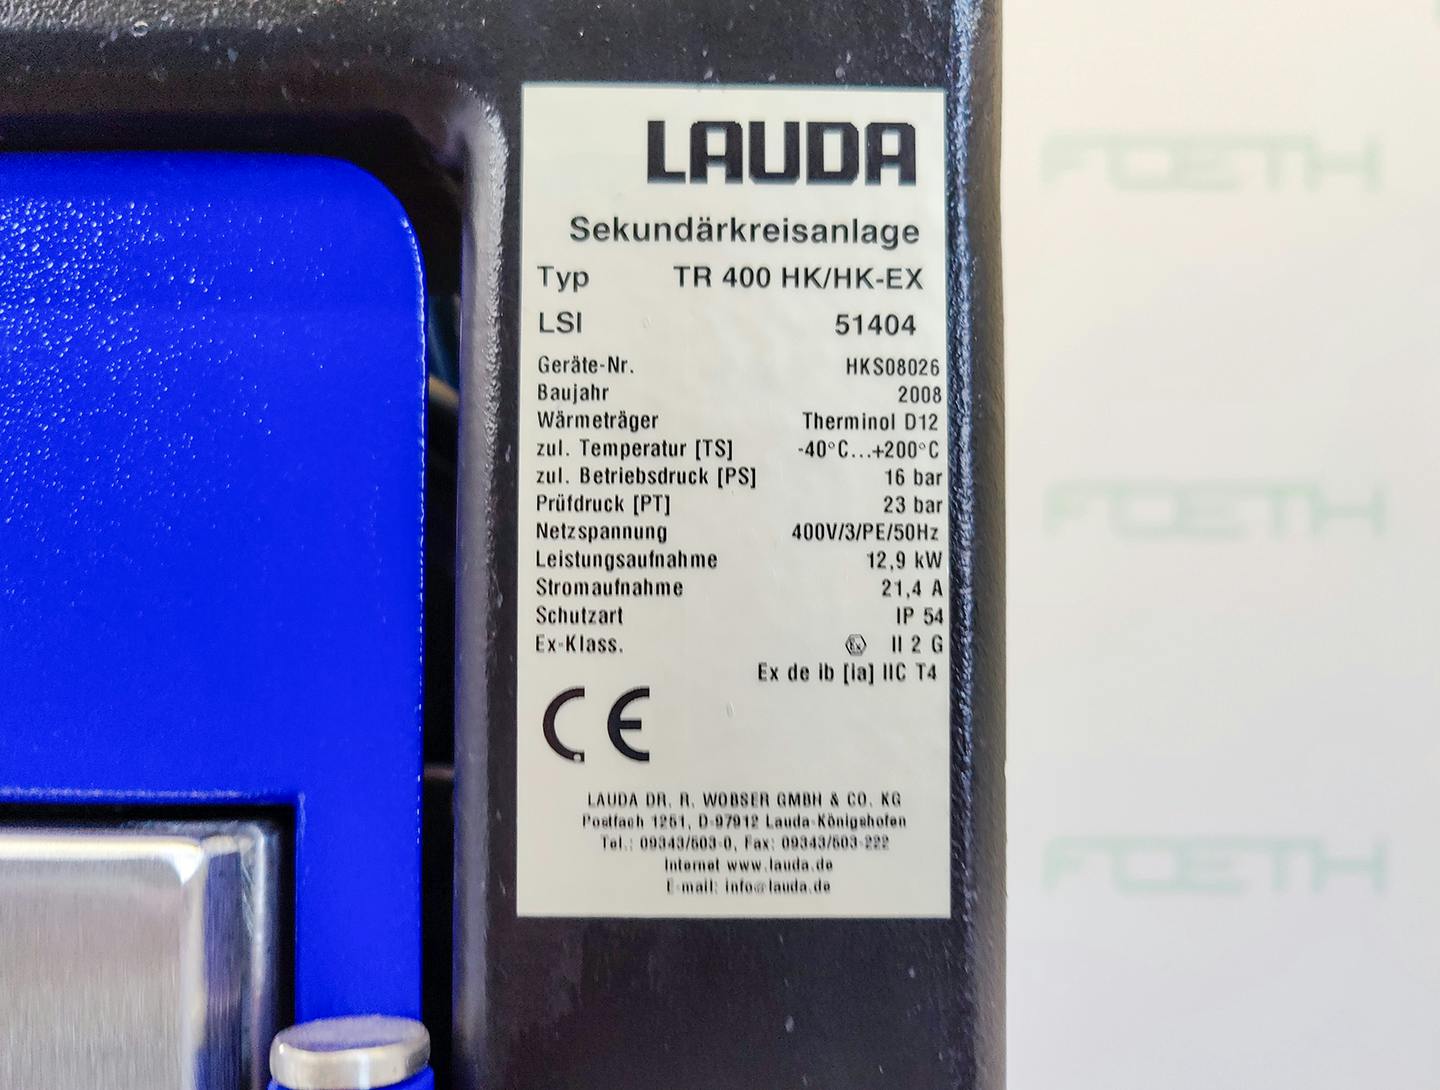 Lauda TR400 HK/HK-EX "secondary circuit system" - Temperature control unit - image 14